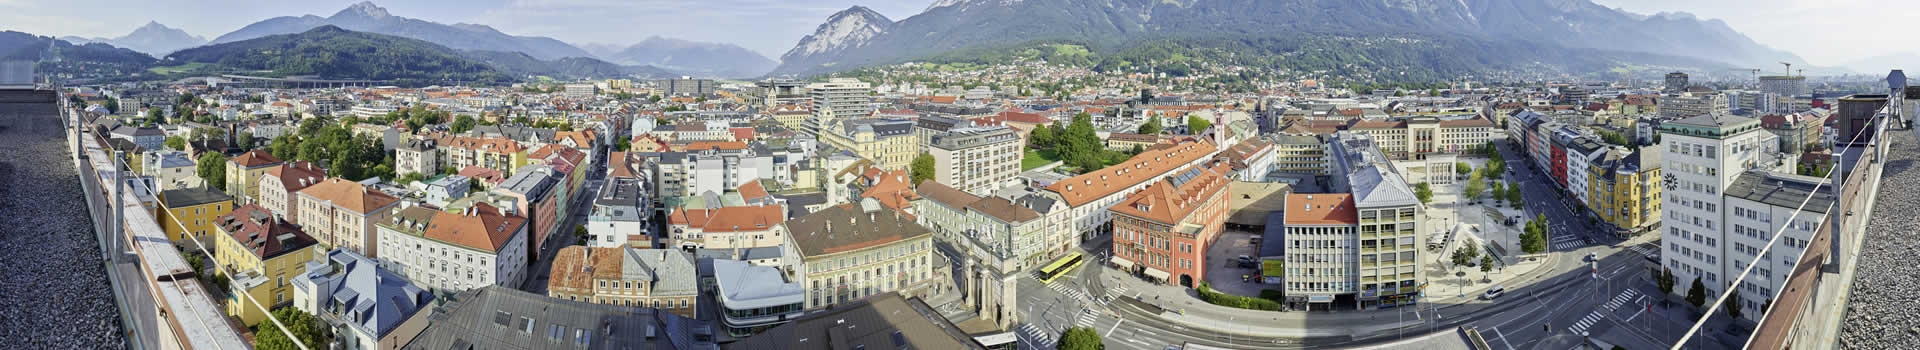 Madrid - Innsbruck - kranebitten